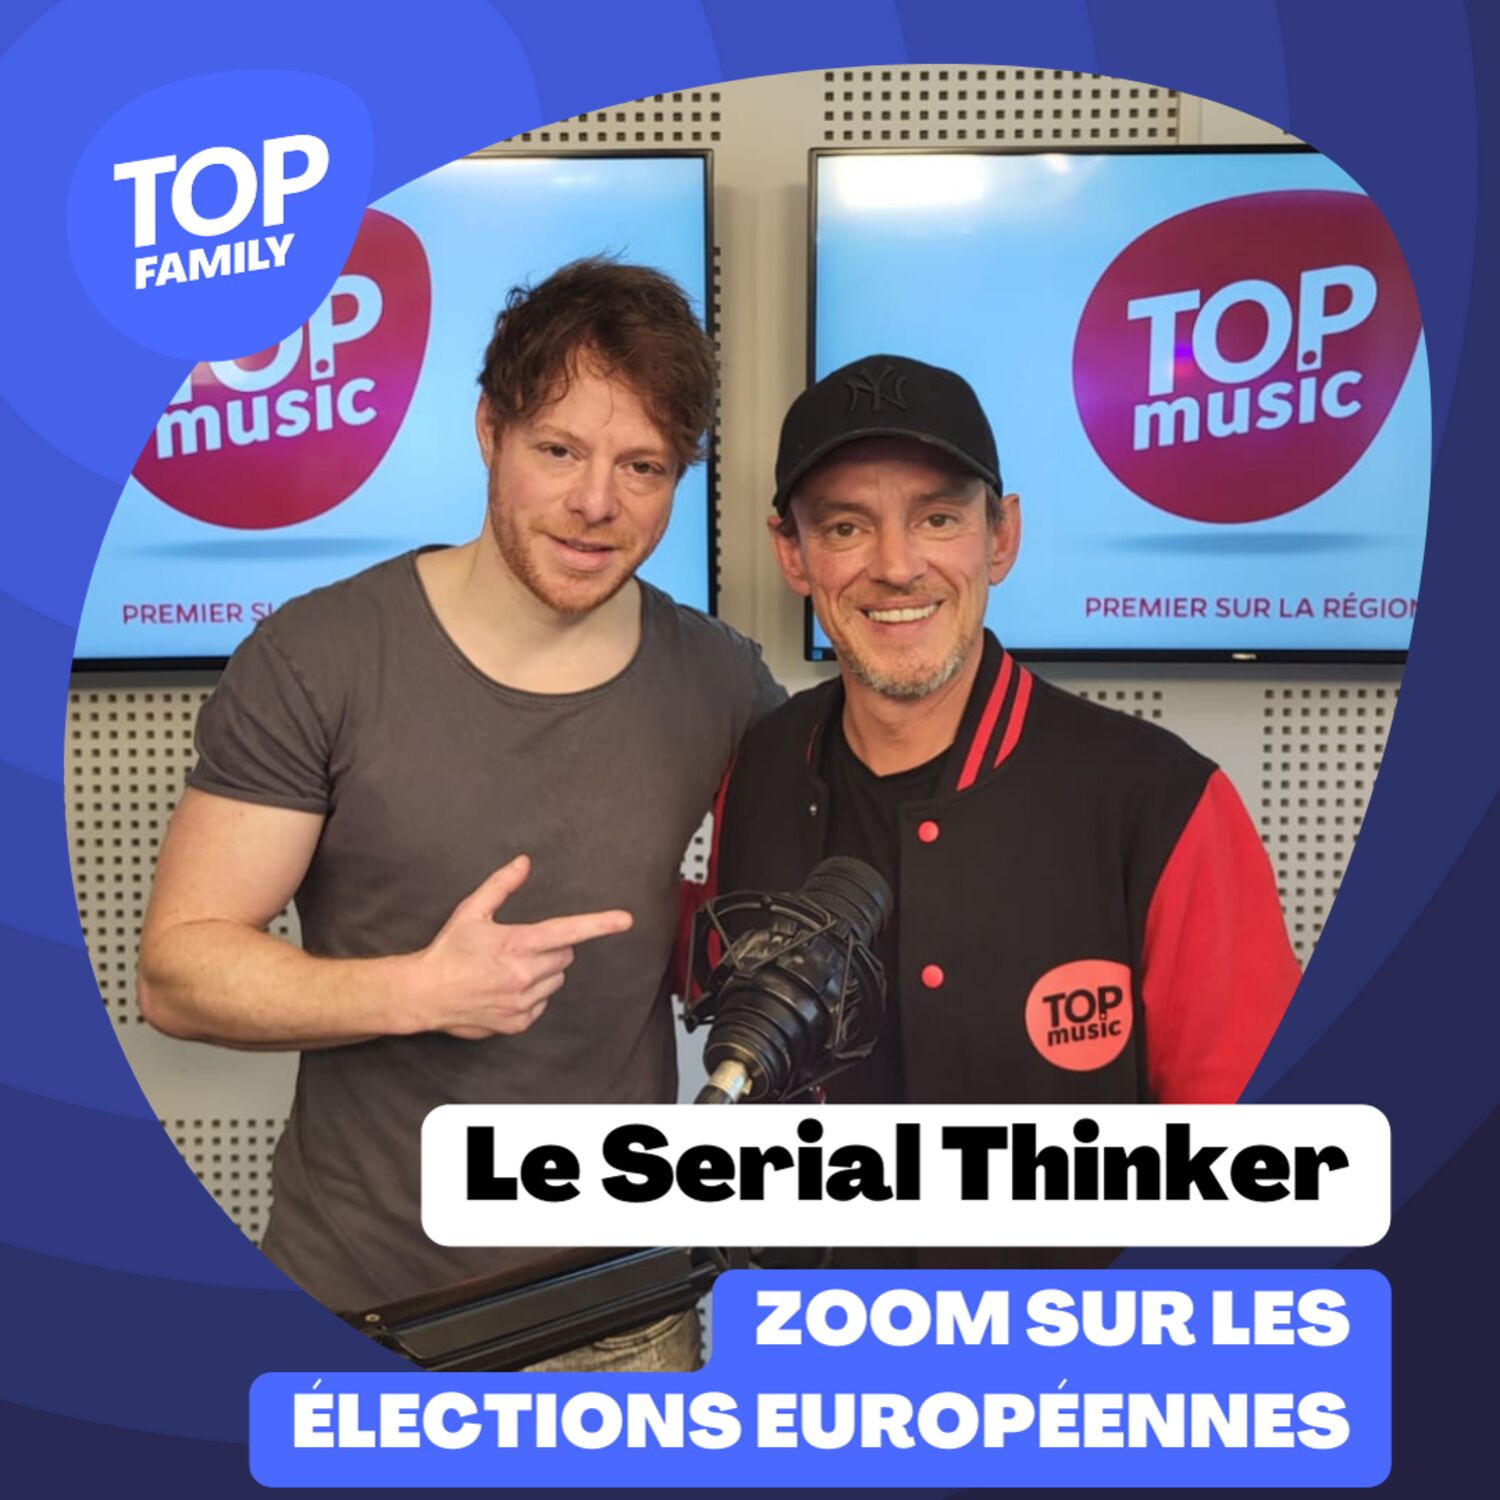 Zoom sur les élections européennes avec le Serial Thinker